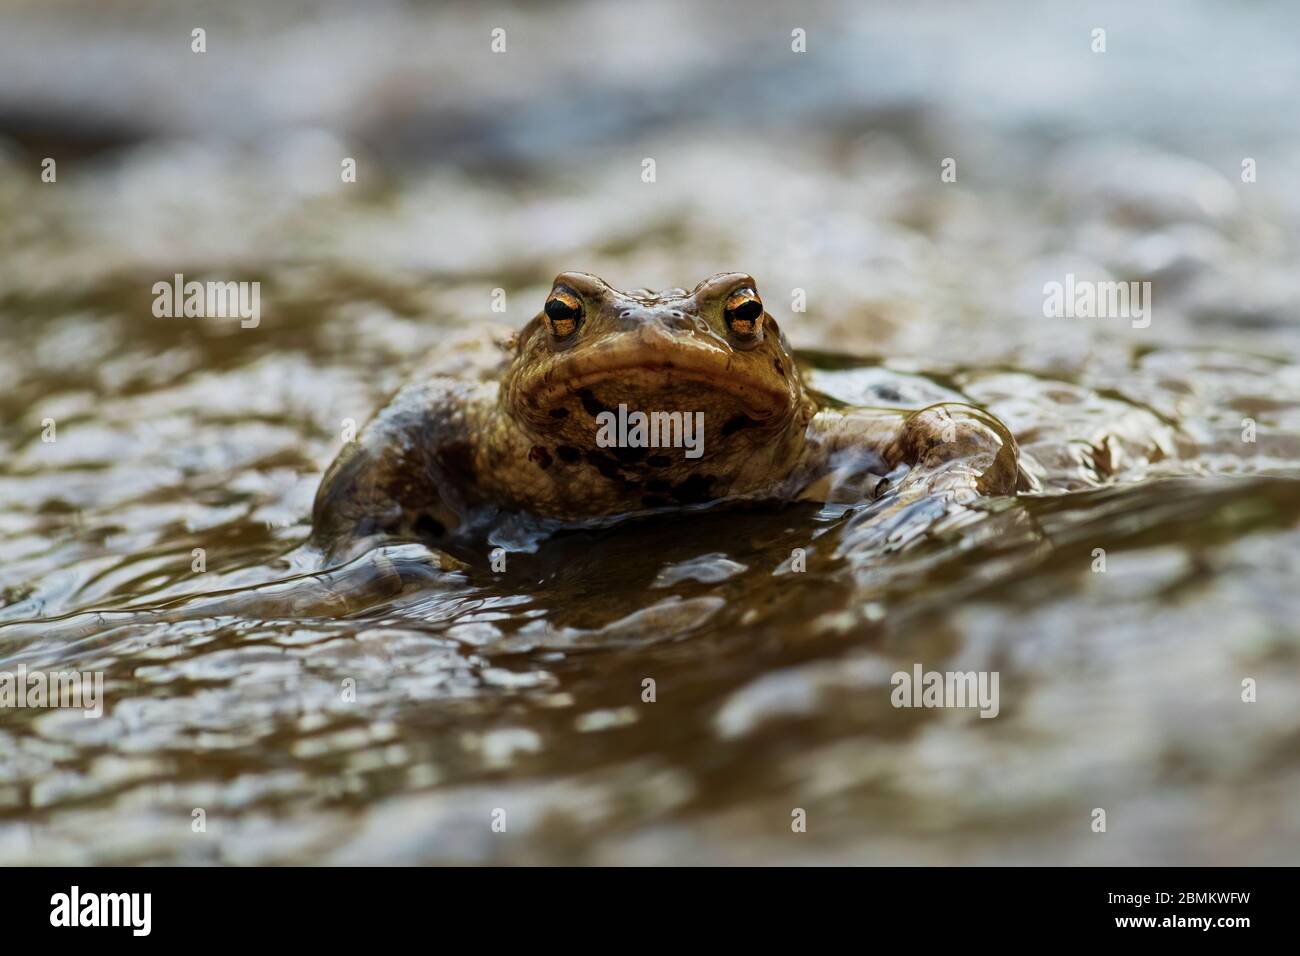 Toad européen commun - Bufo bufo, grande grenouille des rivières et lacs européens, Zlin, République tchèque. Banque D'Images